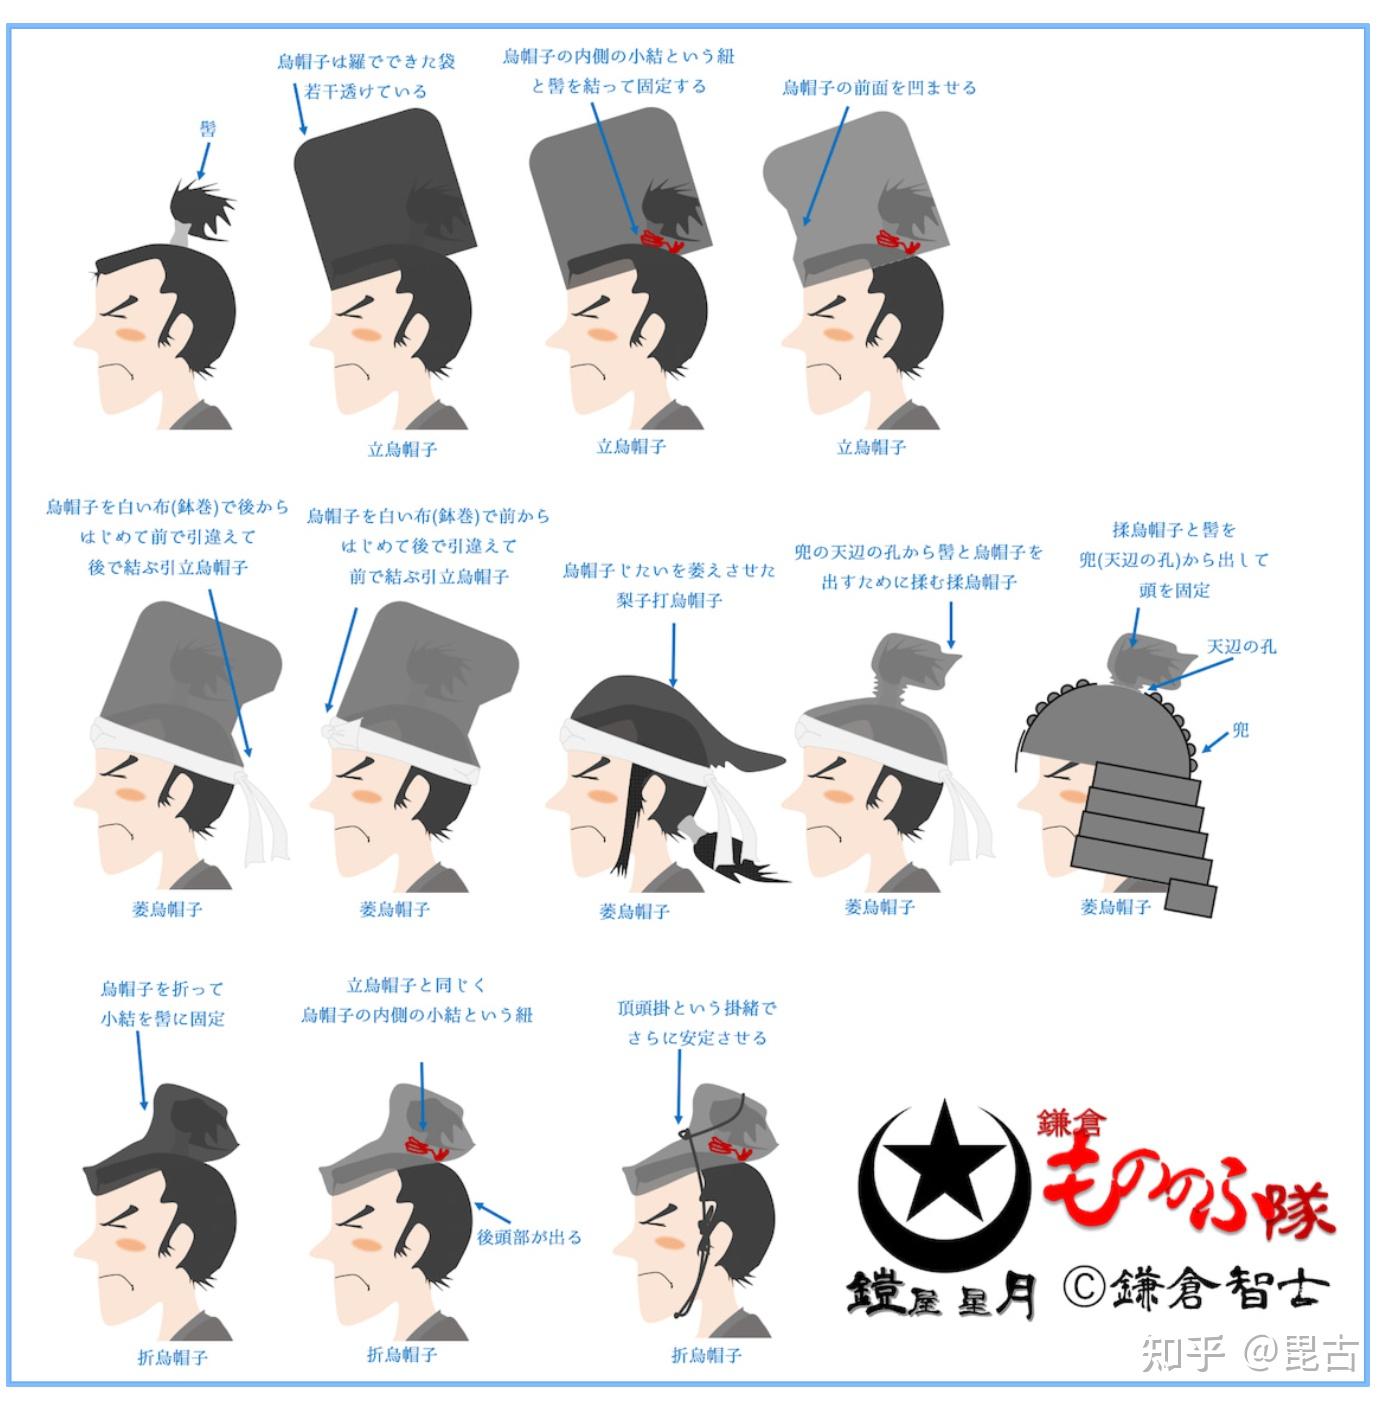 日本传统服饰中的帽子后部为什么总是悬空的